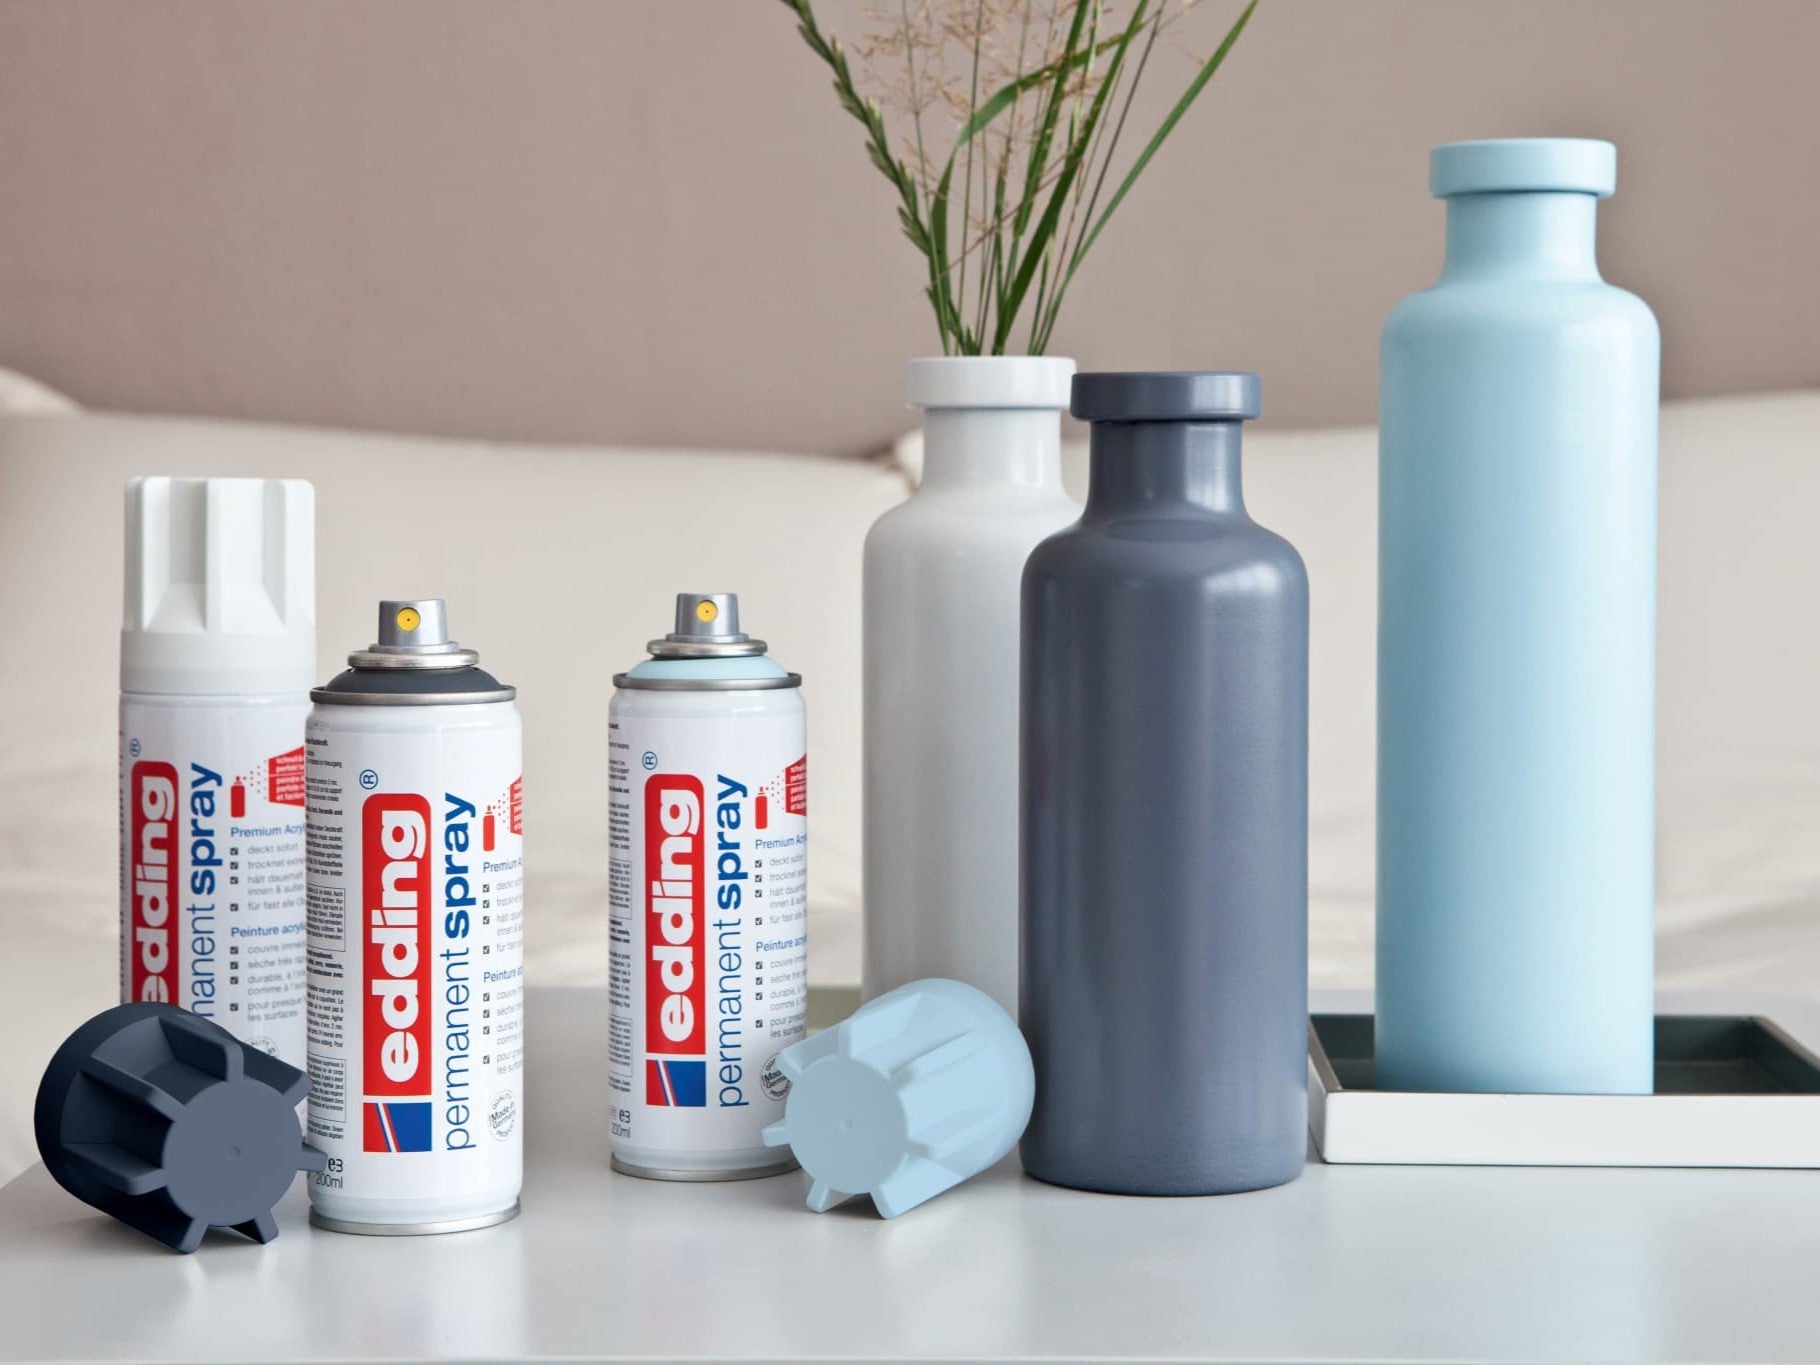 Eine Sammlung von edding 5200 Permanentspray Acryllack Pastell & sanfte Farben-Sprühdosen neben frisch bemalten Flaschen in passenden pastellblauen Farbtönen, präsentiert in einer modernen Inneneinrichtung.